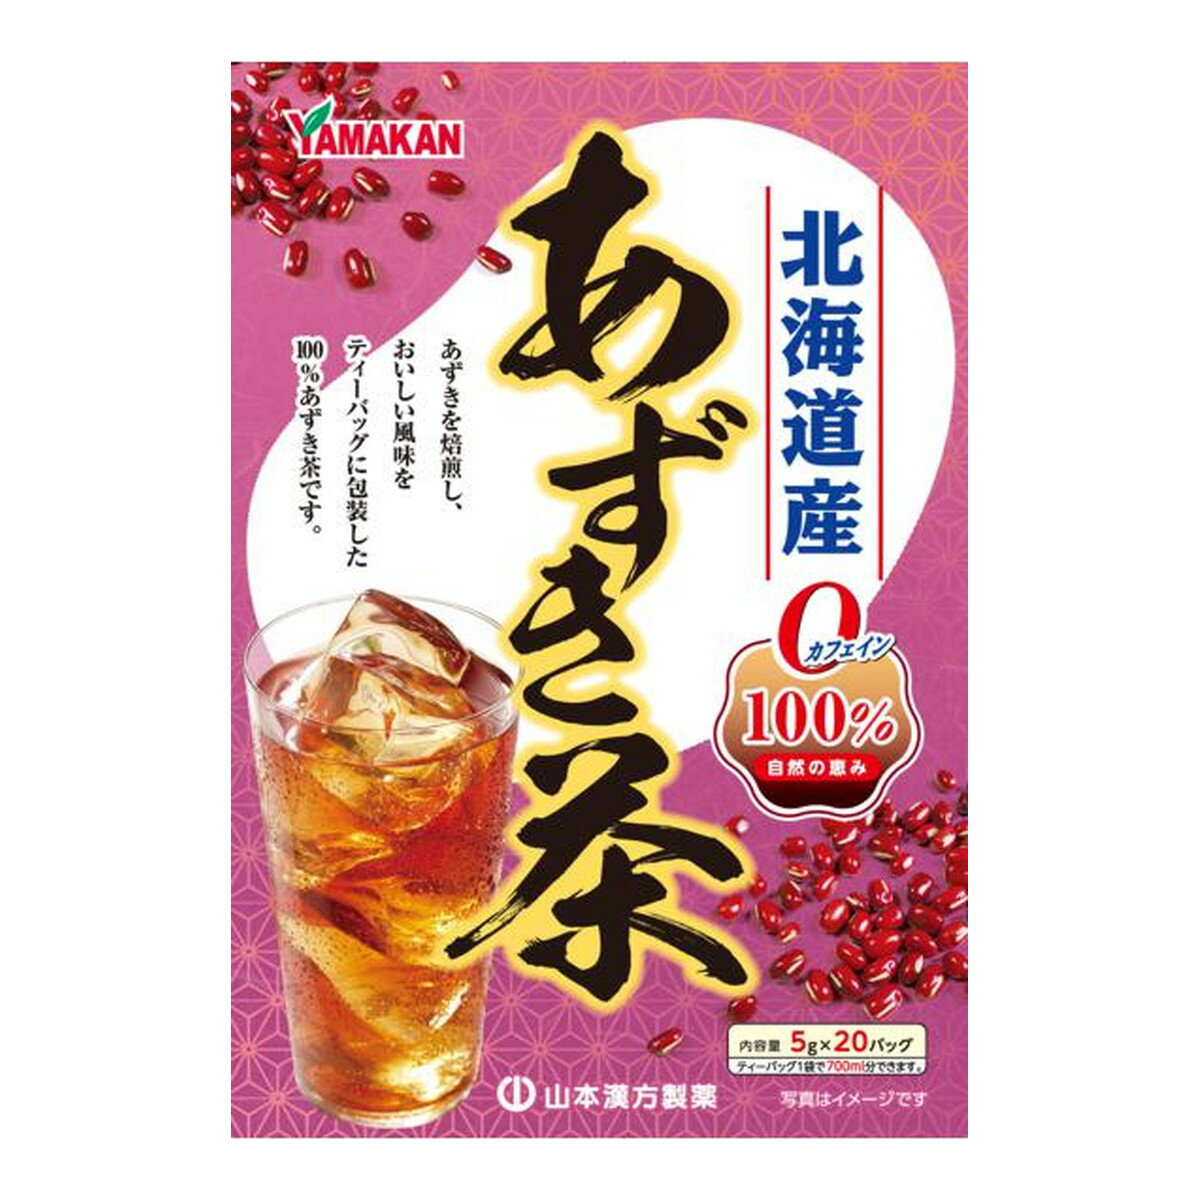 山本漢方 あずき茶 100% 5g×20包入